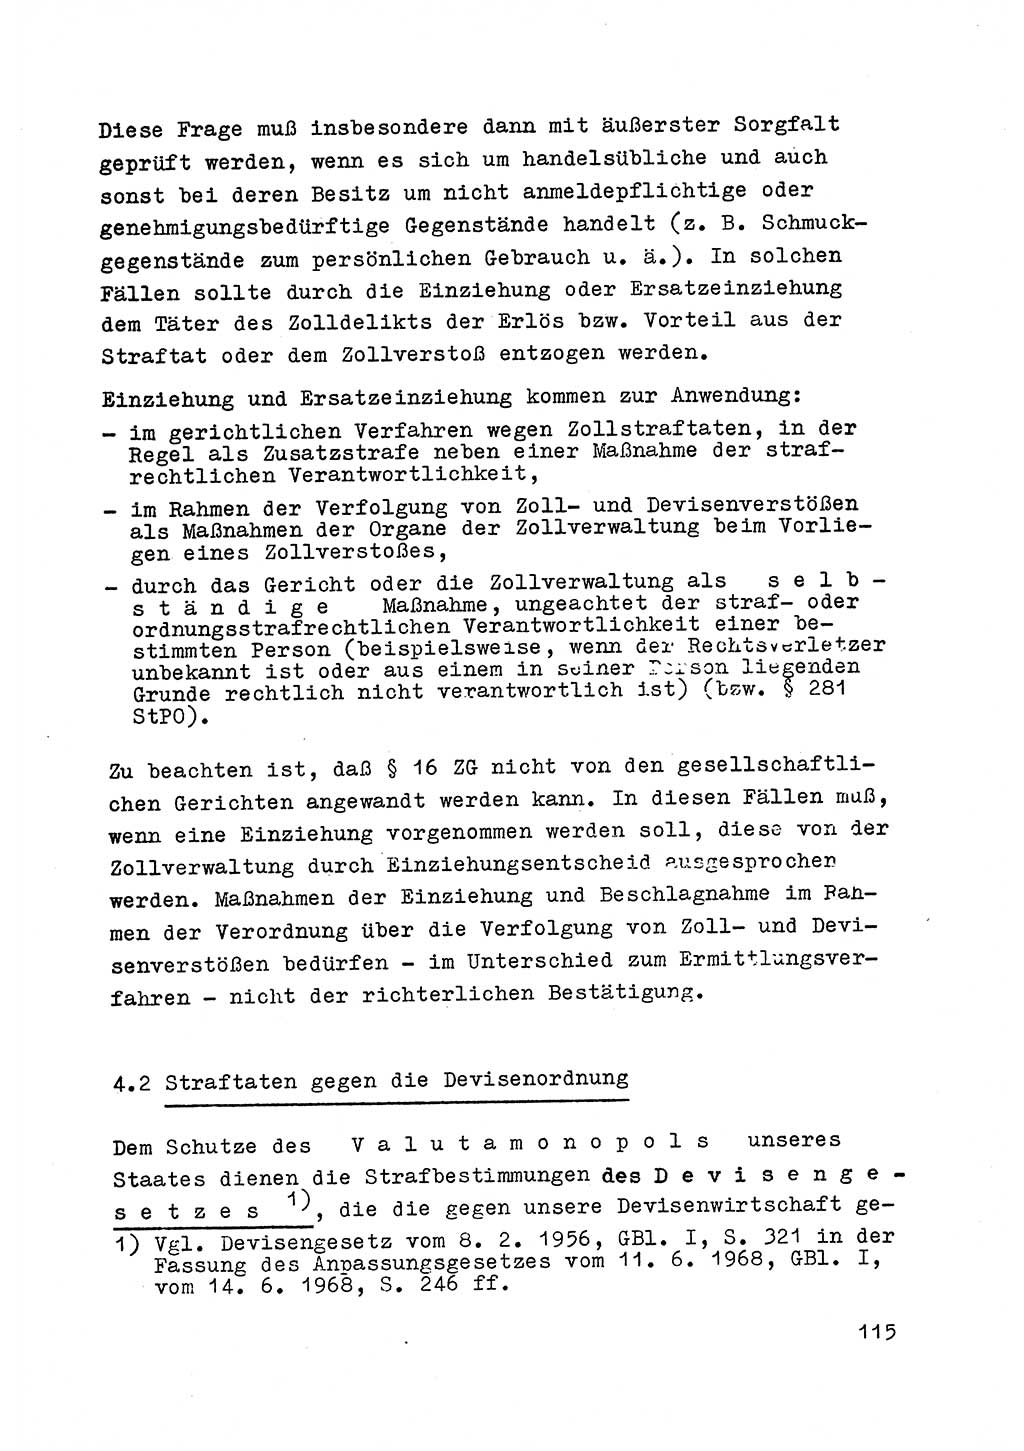 Strafrecht der DDR (Deutsche Demokratische Republik), Besonderer Teil, Lehrmaterial, Heft 6 1970, Seite 115 (Strafr. DDR BT Lehrmat. H. 6 1970, S. 115)